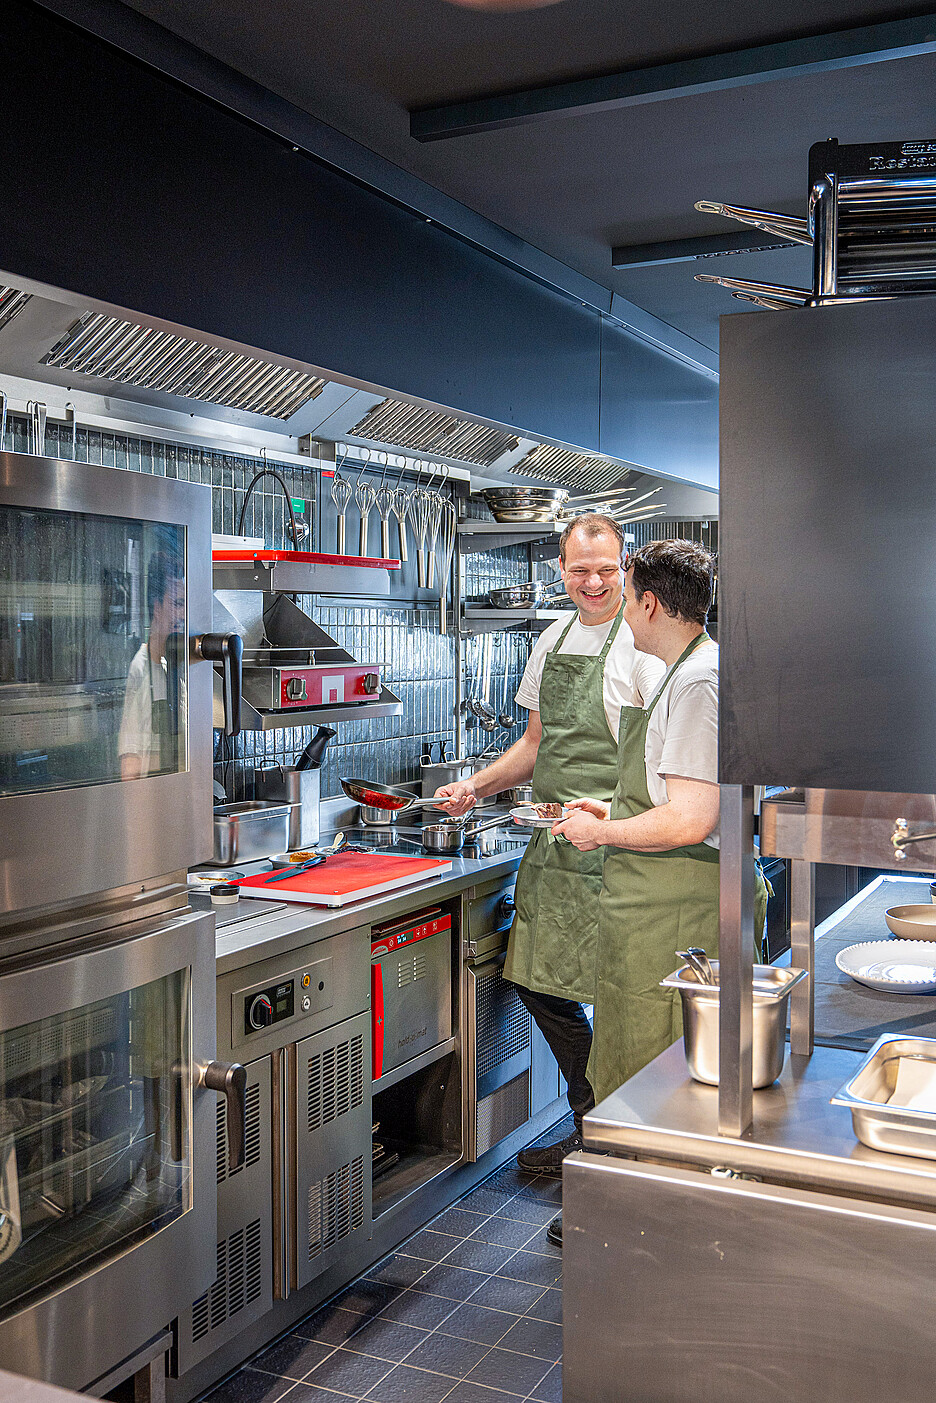 Chefkoch Jürgen Andre konnte die Küche nach seinen Bedürfnissen einrichten – Gastroplaner Beat Steffen und Architekt Wolfgang Aeberhard standen beratend zur Seite.